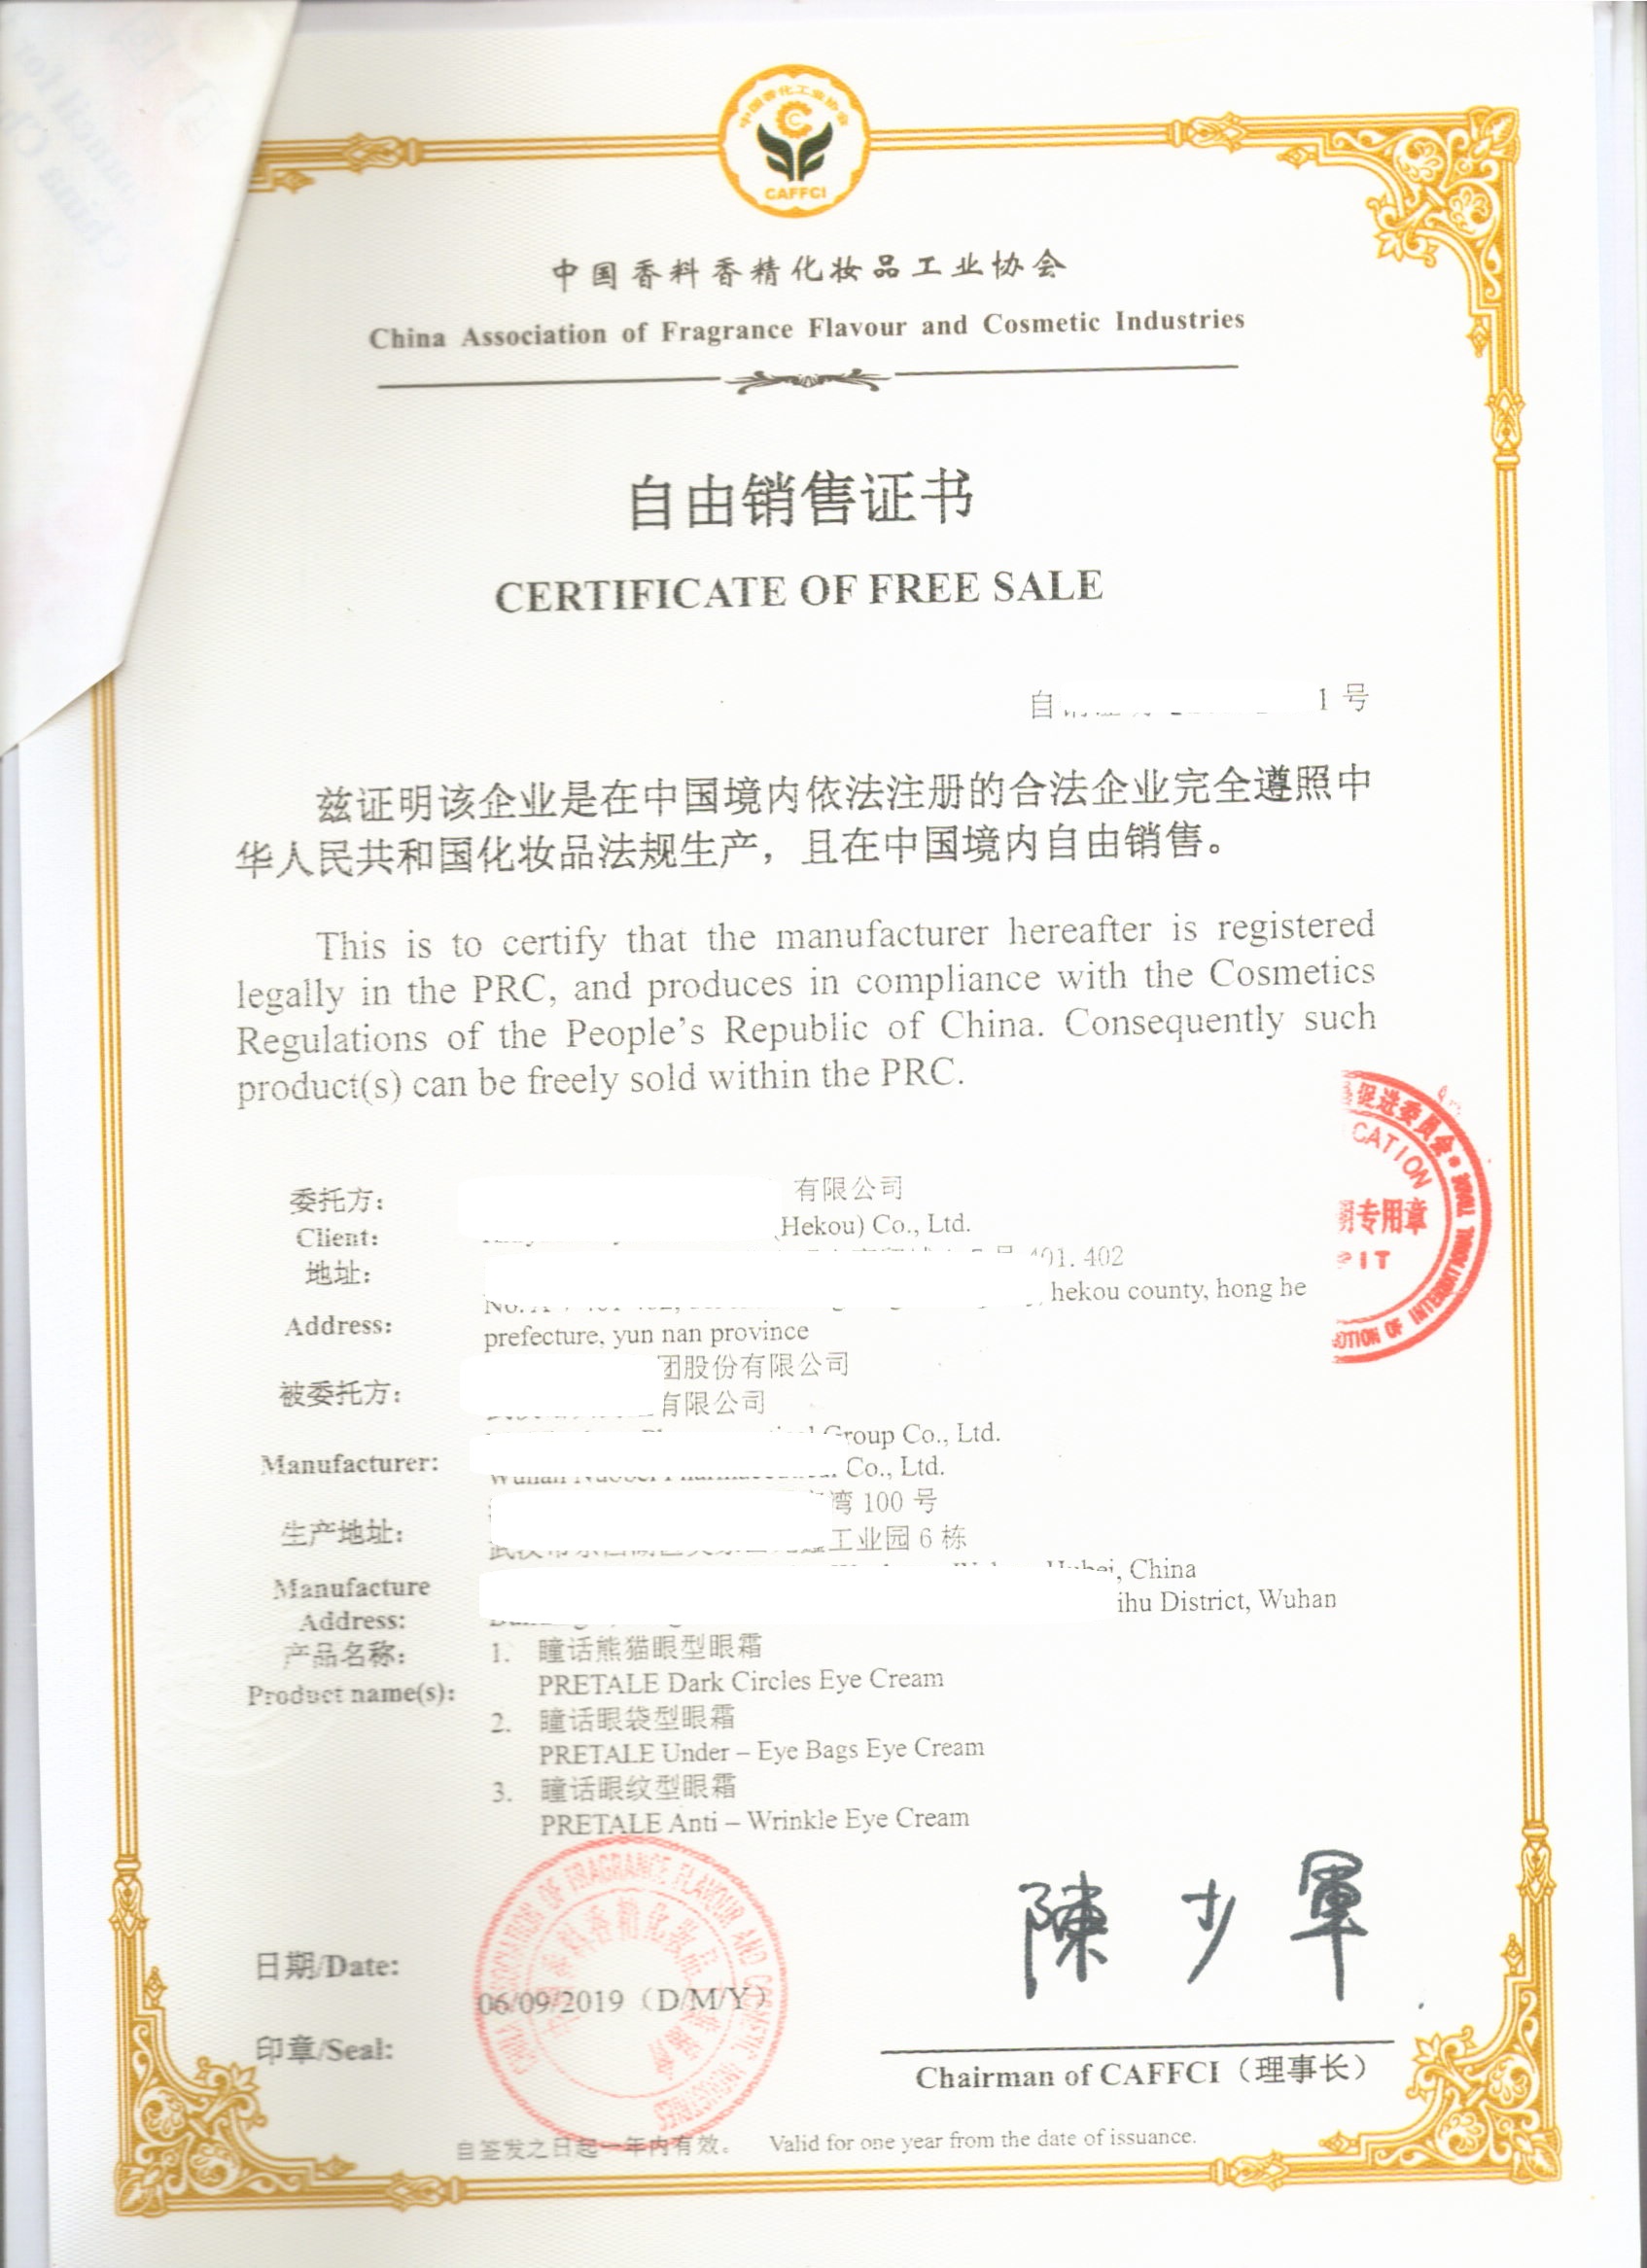 越南使馆认证 香化自由销售证明